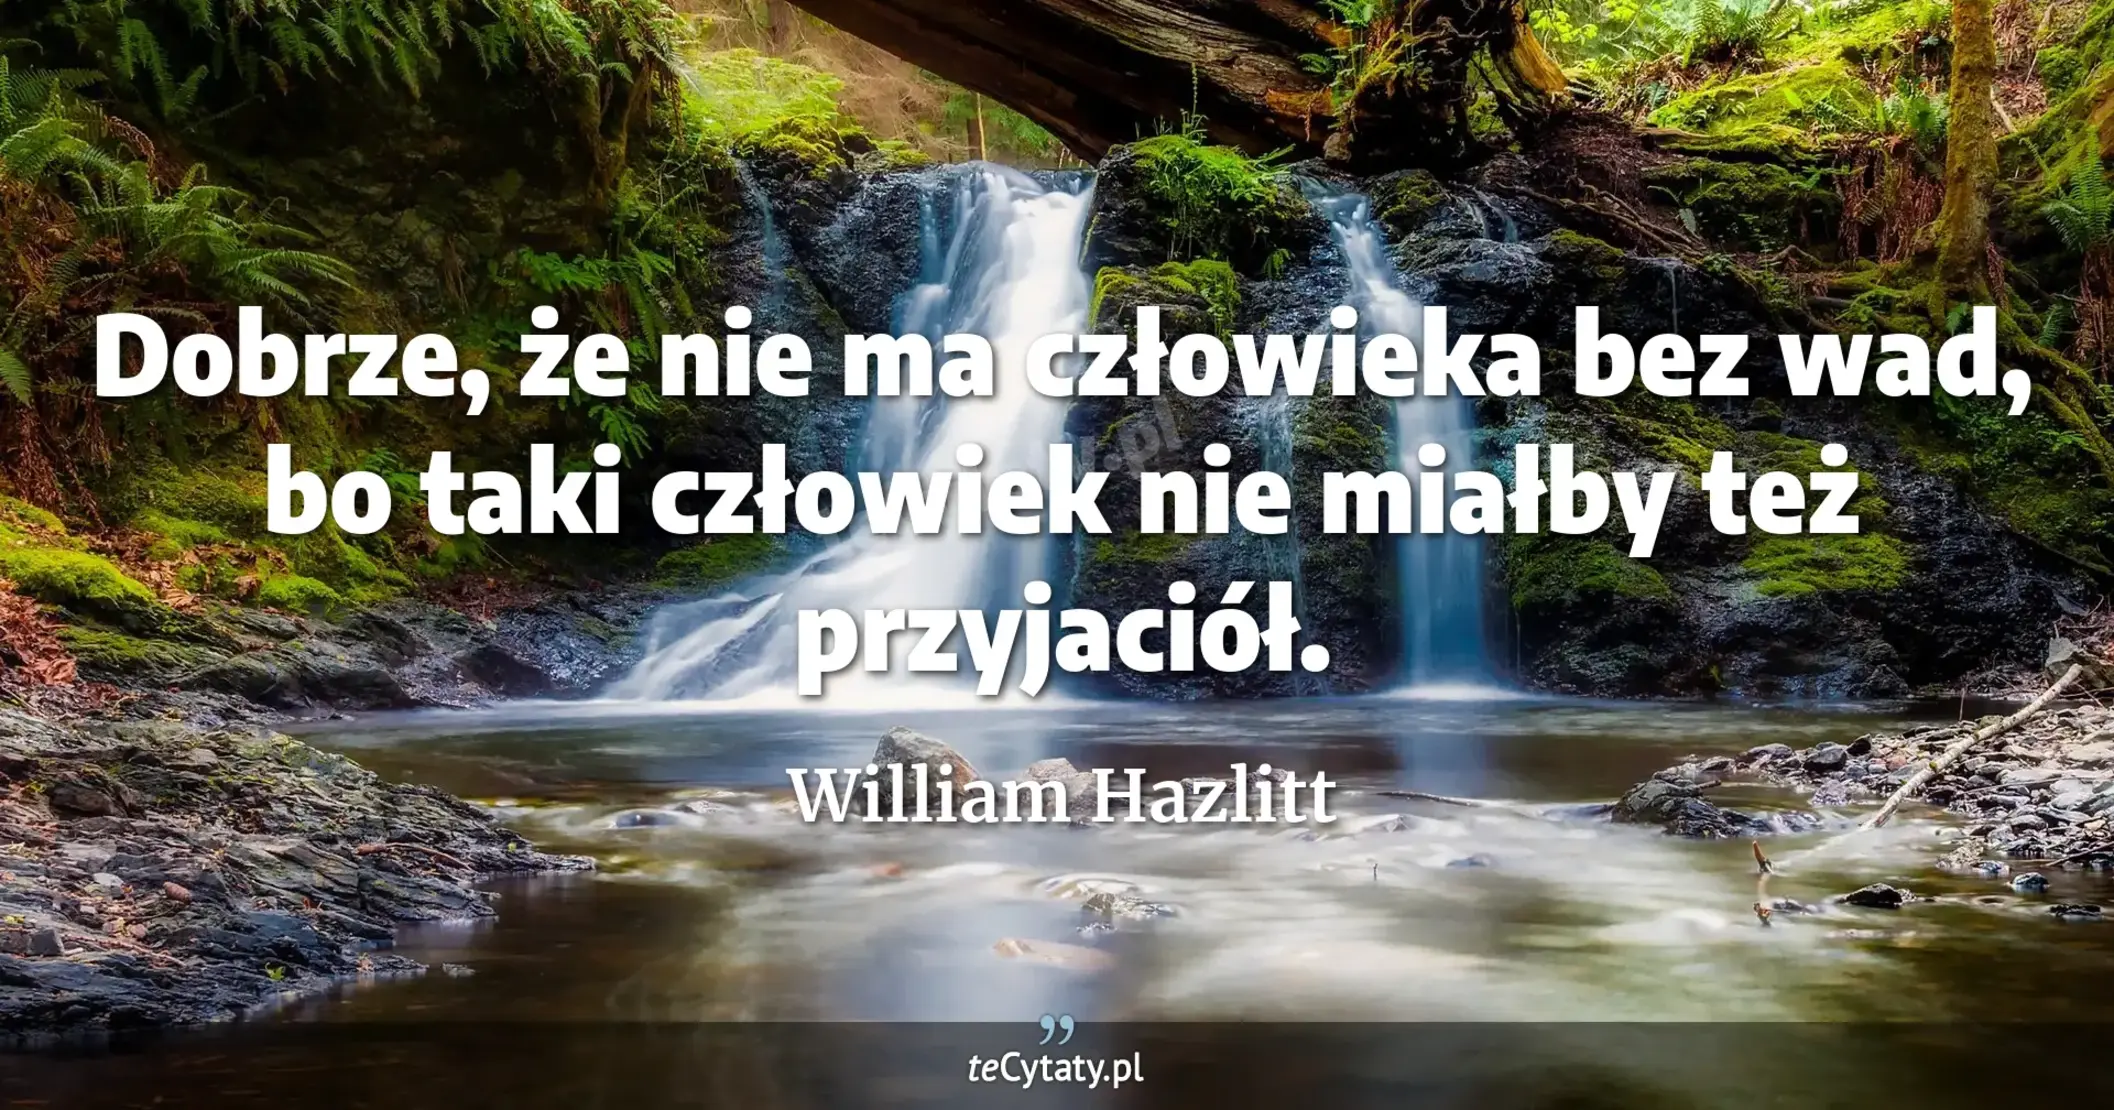 Dobrze, że nie ma człowieka bez wad, bo taki człowiek nie miałby też przyjaciół. - William Hazlitt